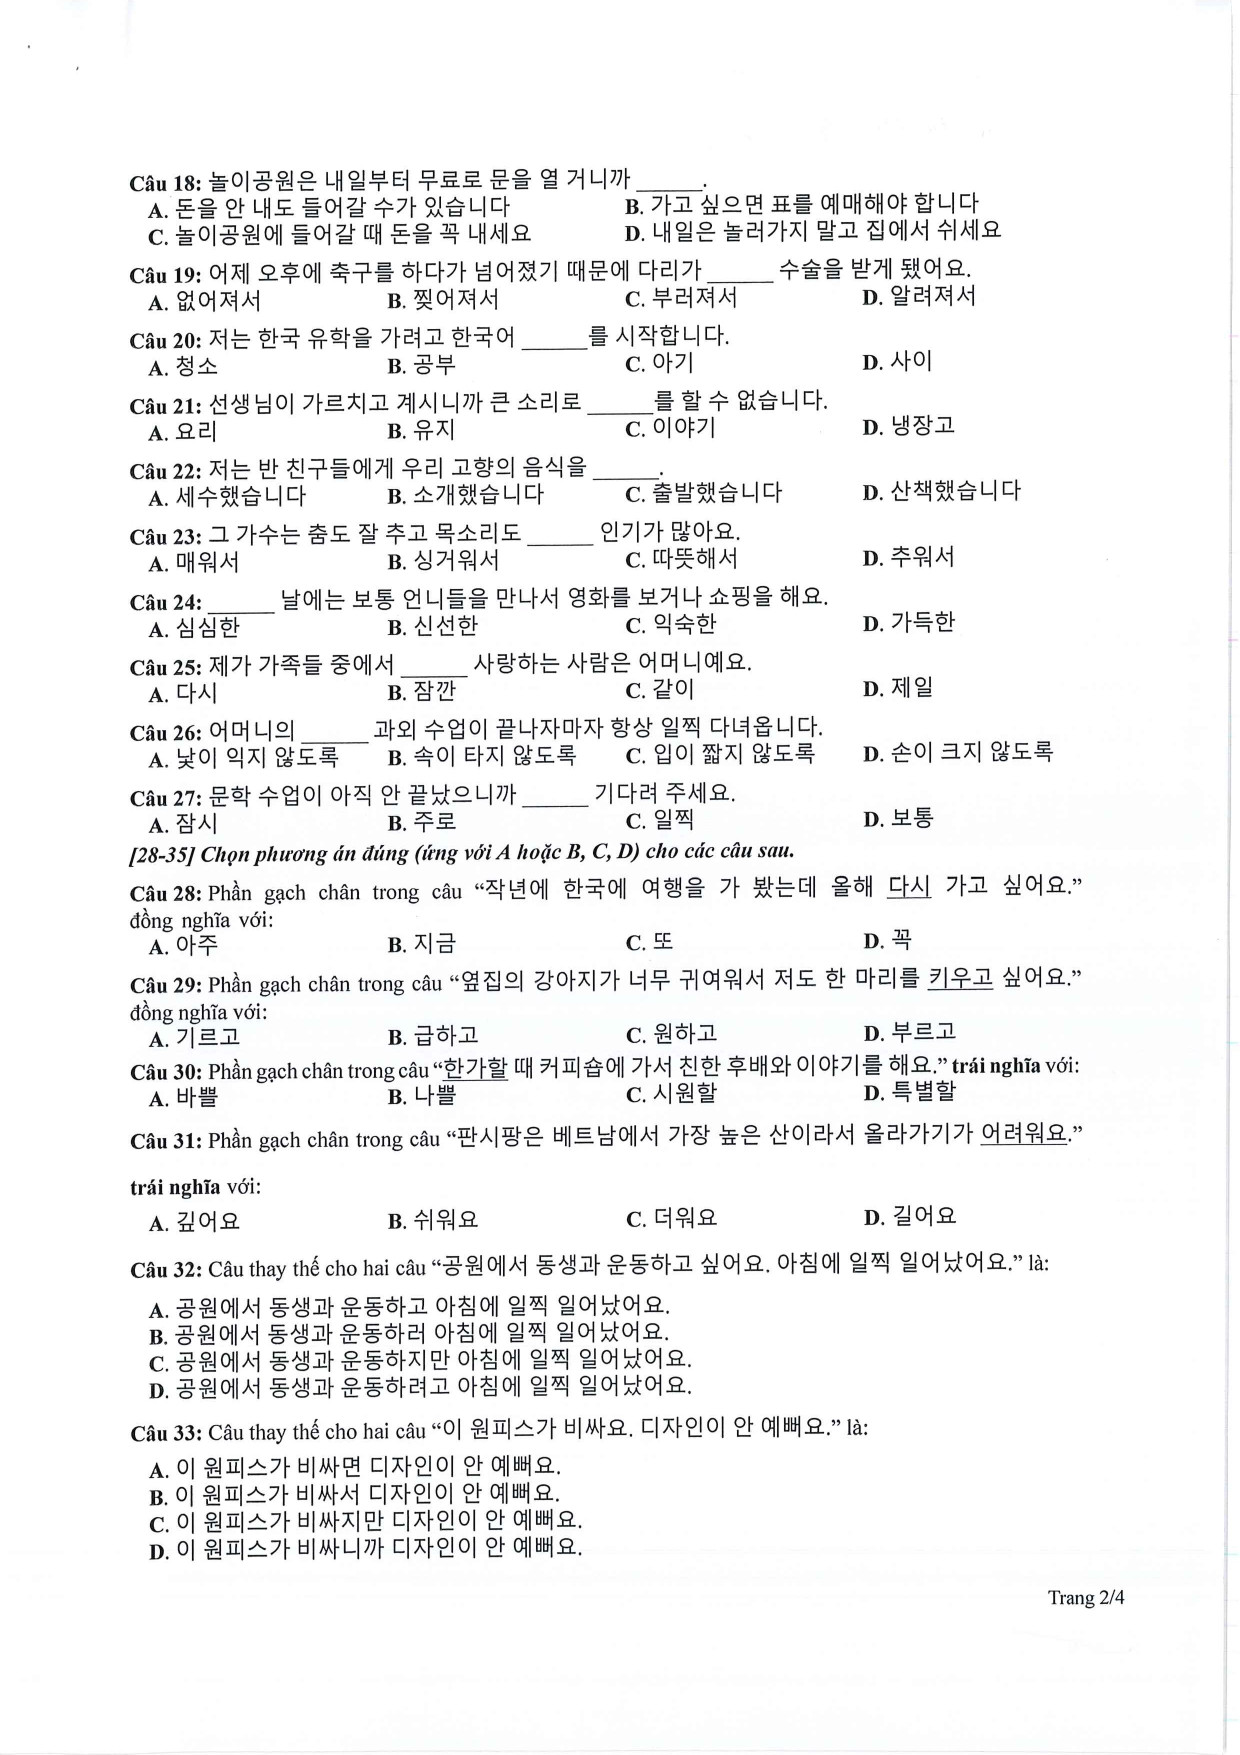 Đề tham khảo tốt nghiệp THPT môn Tiếng Hàn năm 2024 (có đáp án chi tiết) (ảnh 1)